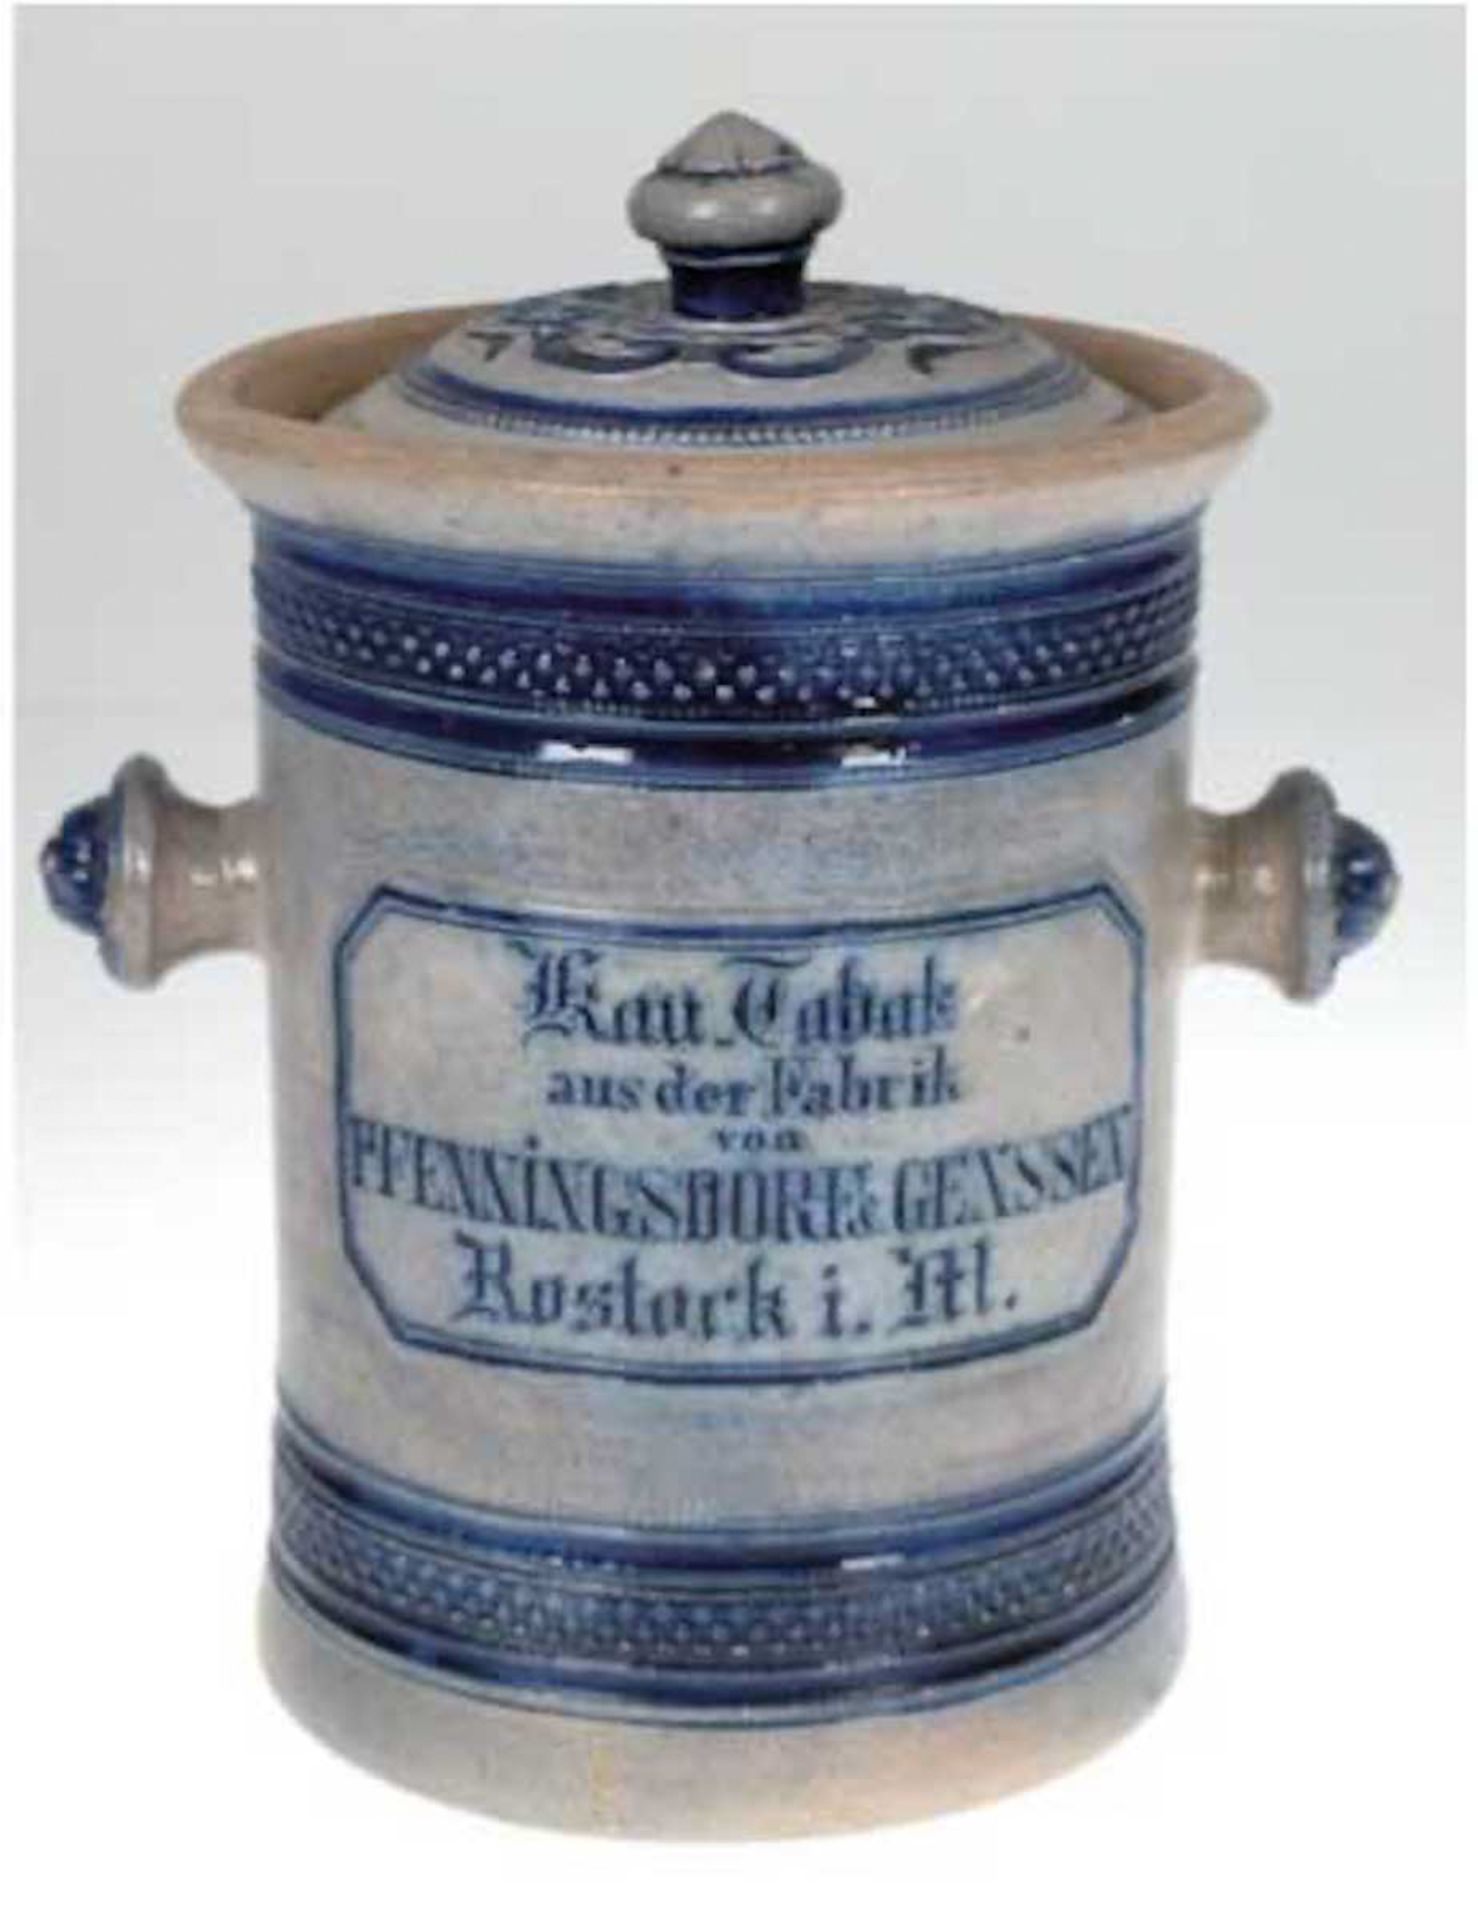 Kautabaktopf um 1900, "Kau-Tabak aus der Fabrik von Pfenningsdorf & Genssen, Rostocki.M.", sa